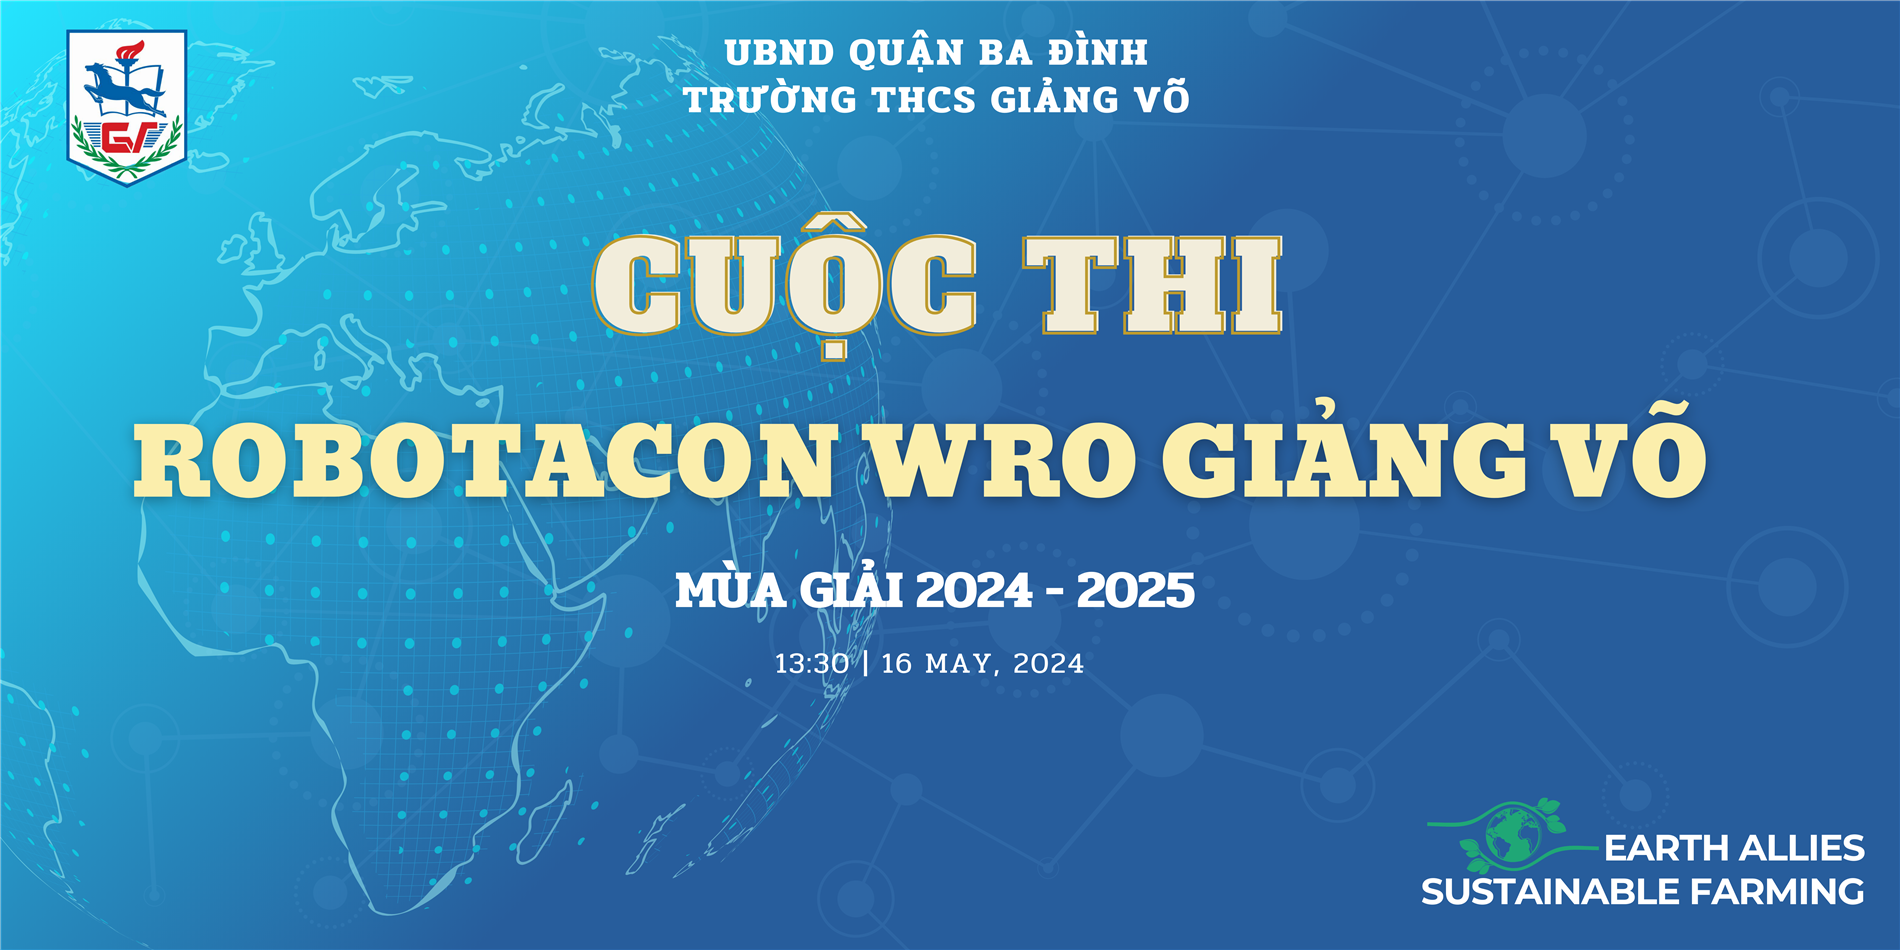 Thông báo kế hoạch tổ chức Cuộc thi "Robotacon WRO Giảng Võ" mùa giải 2024 - 2025